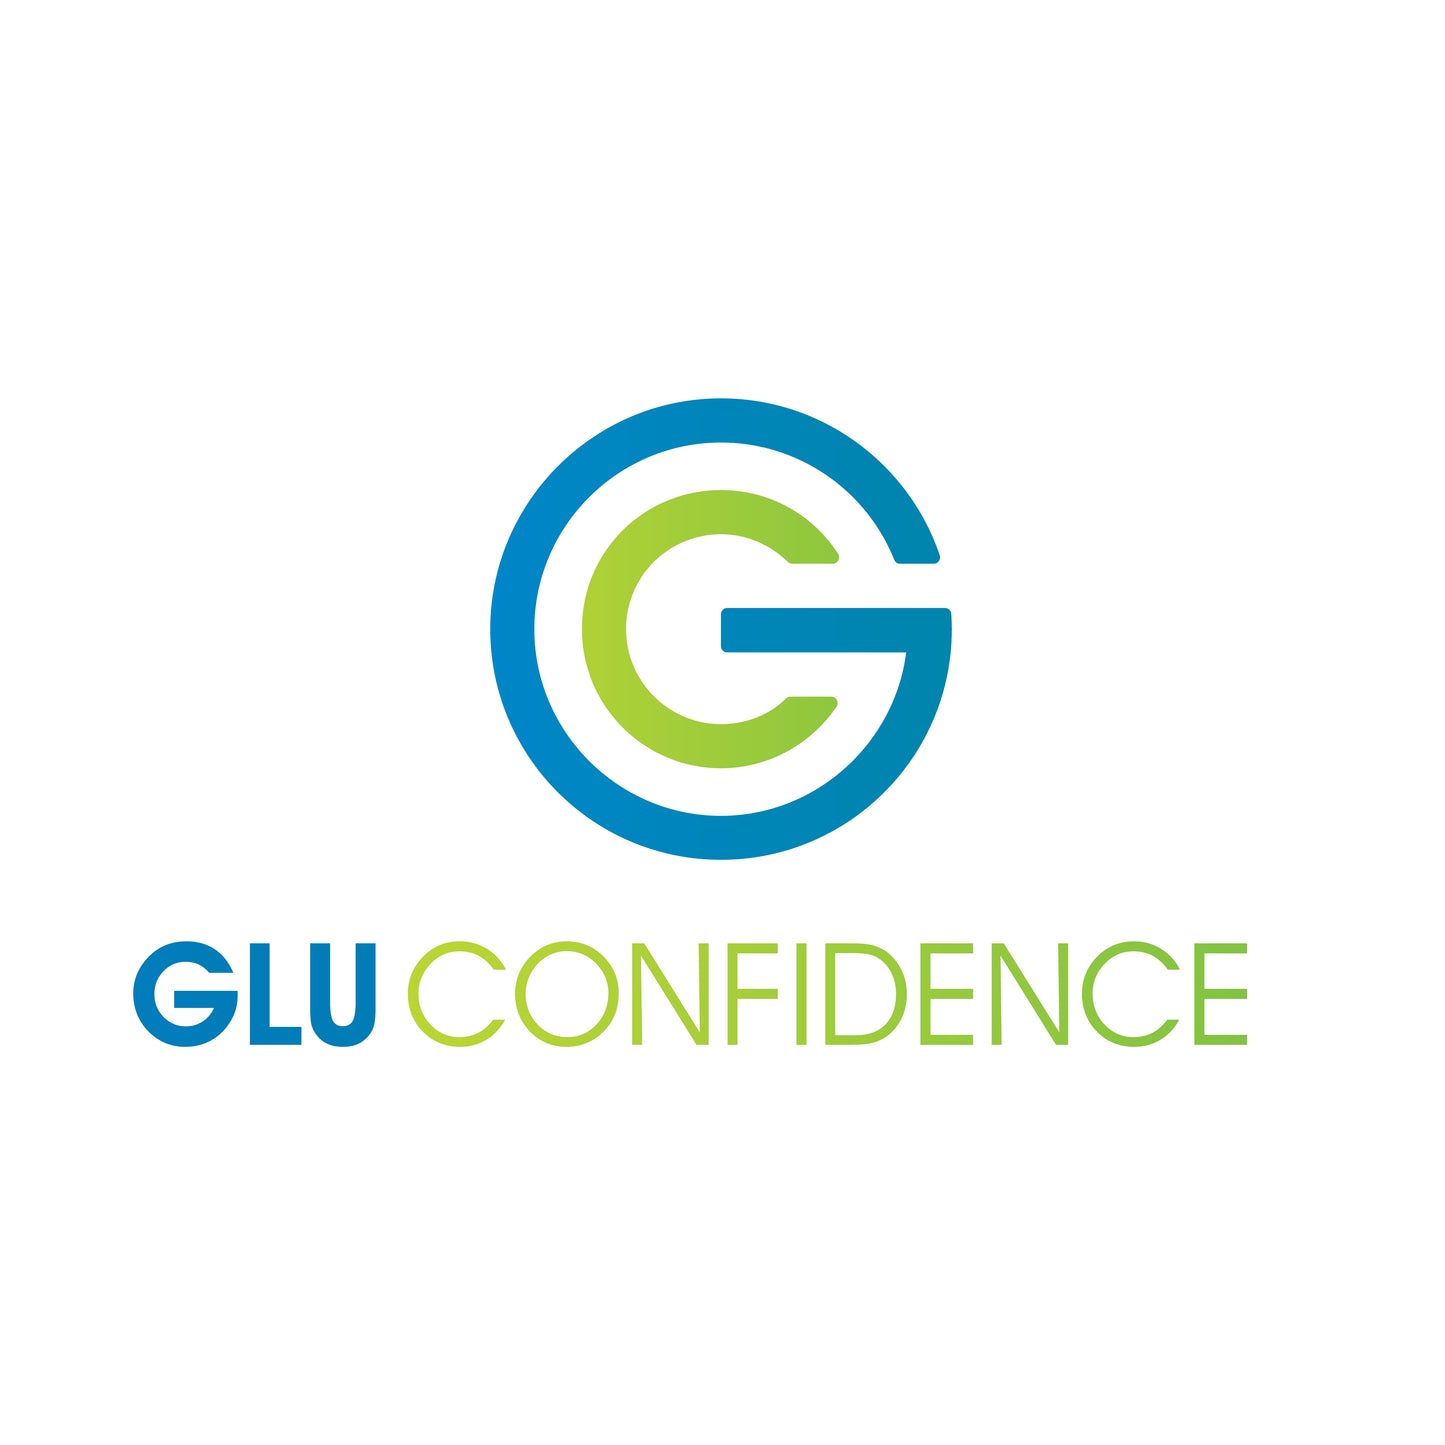 Gluconfidence Liquid Glucose